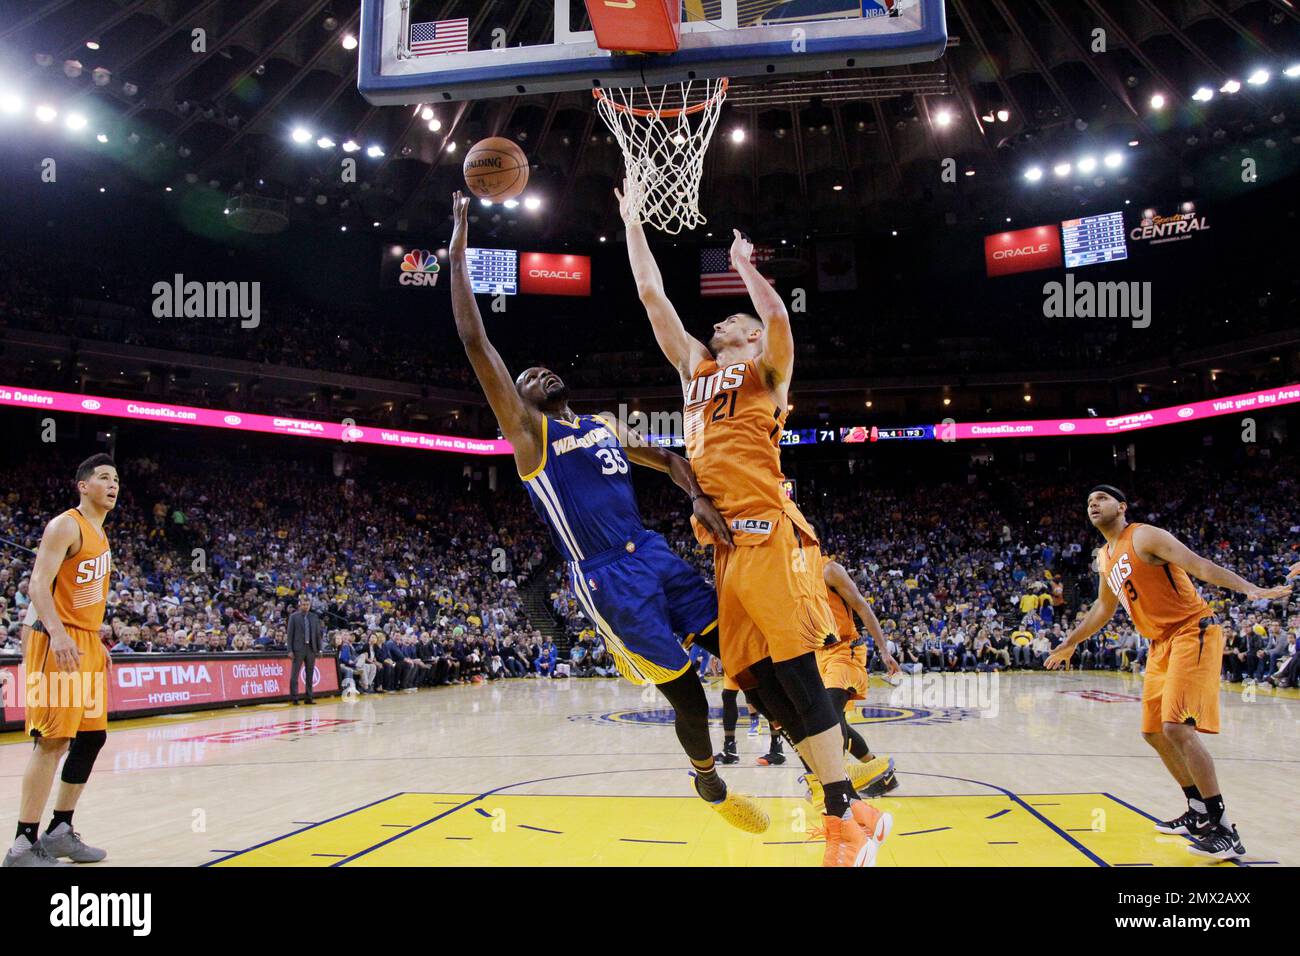 Alex Len - Phoenix Suns - Game-Worn 'Los Suns' City Jersey - 2017